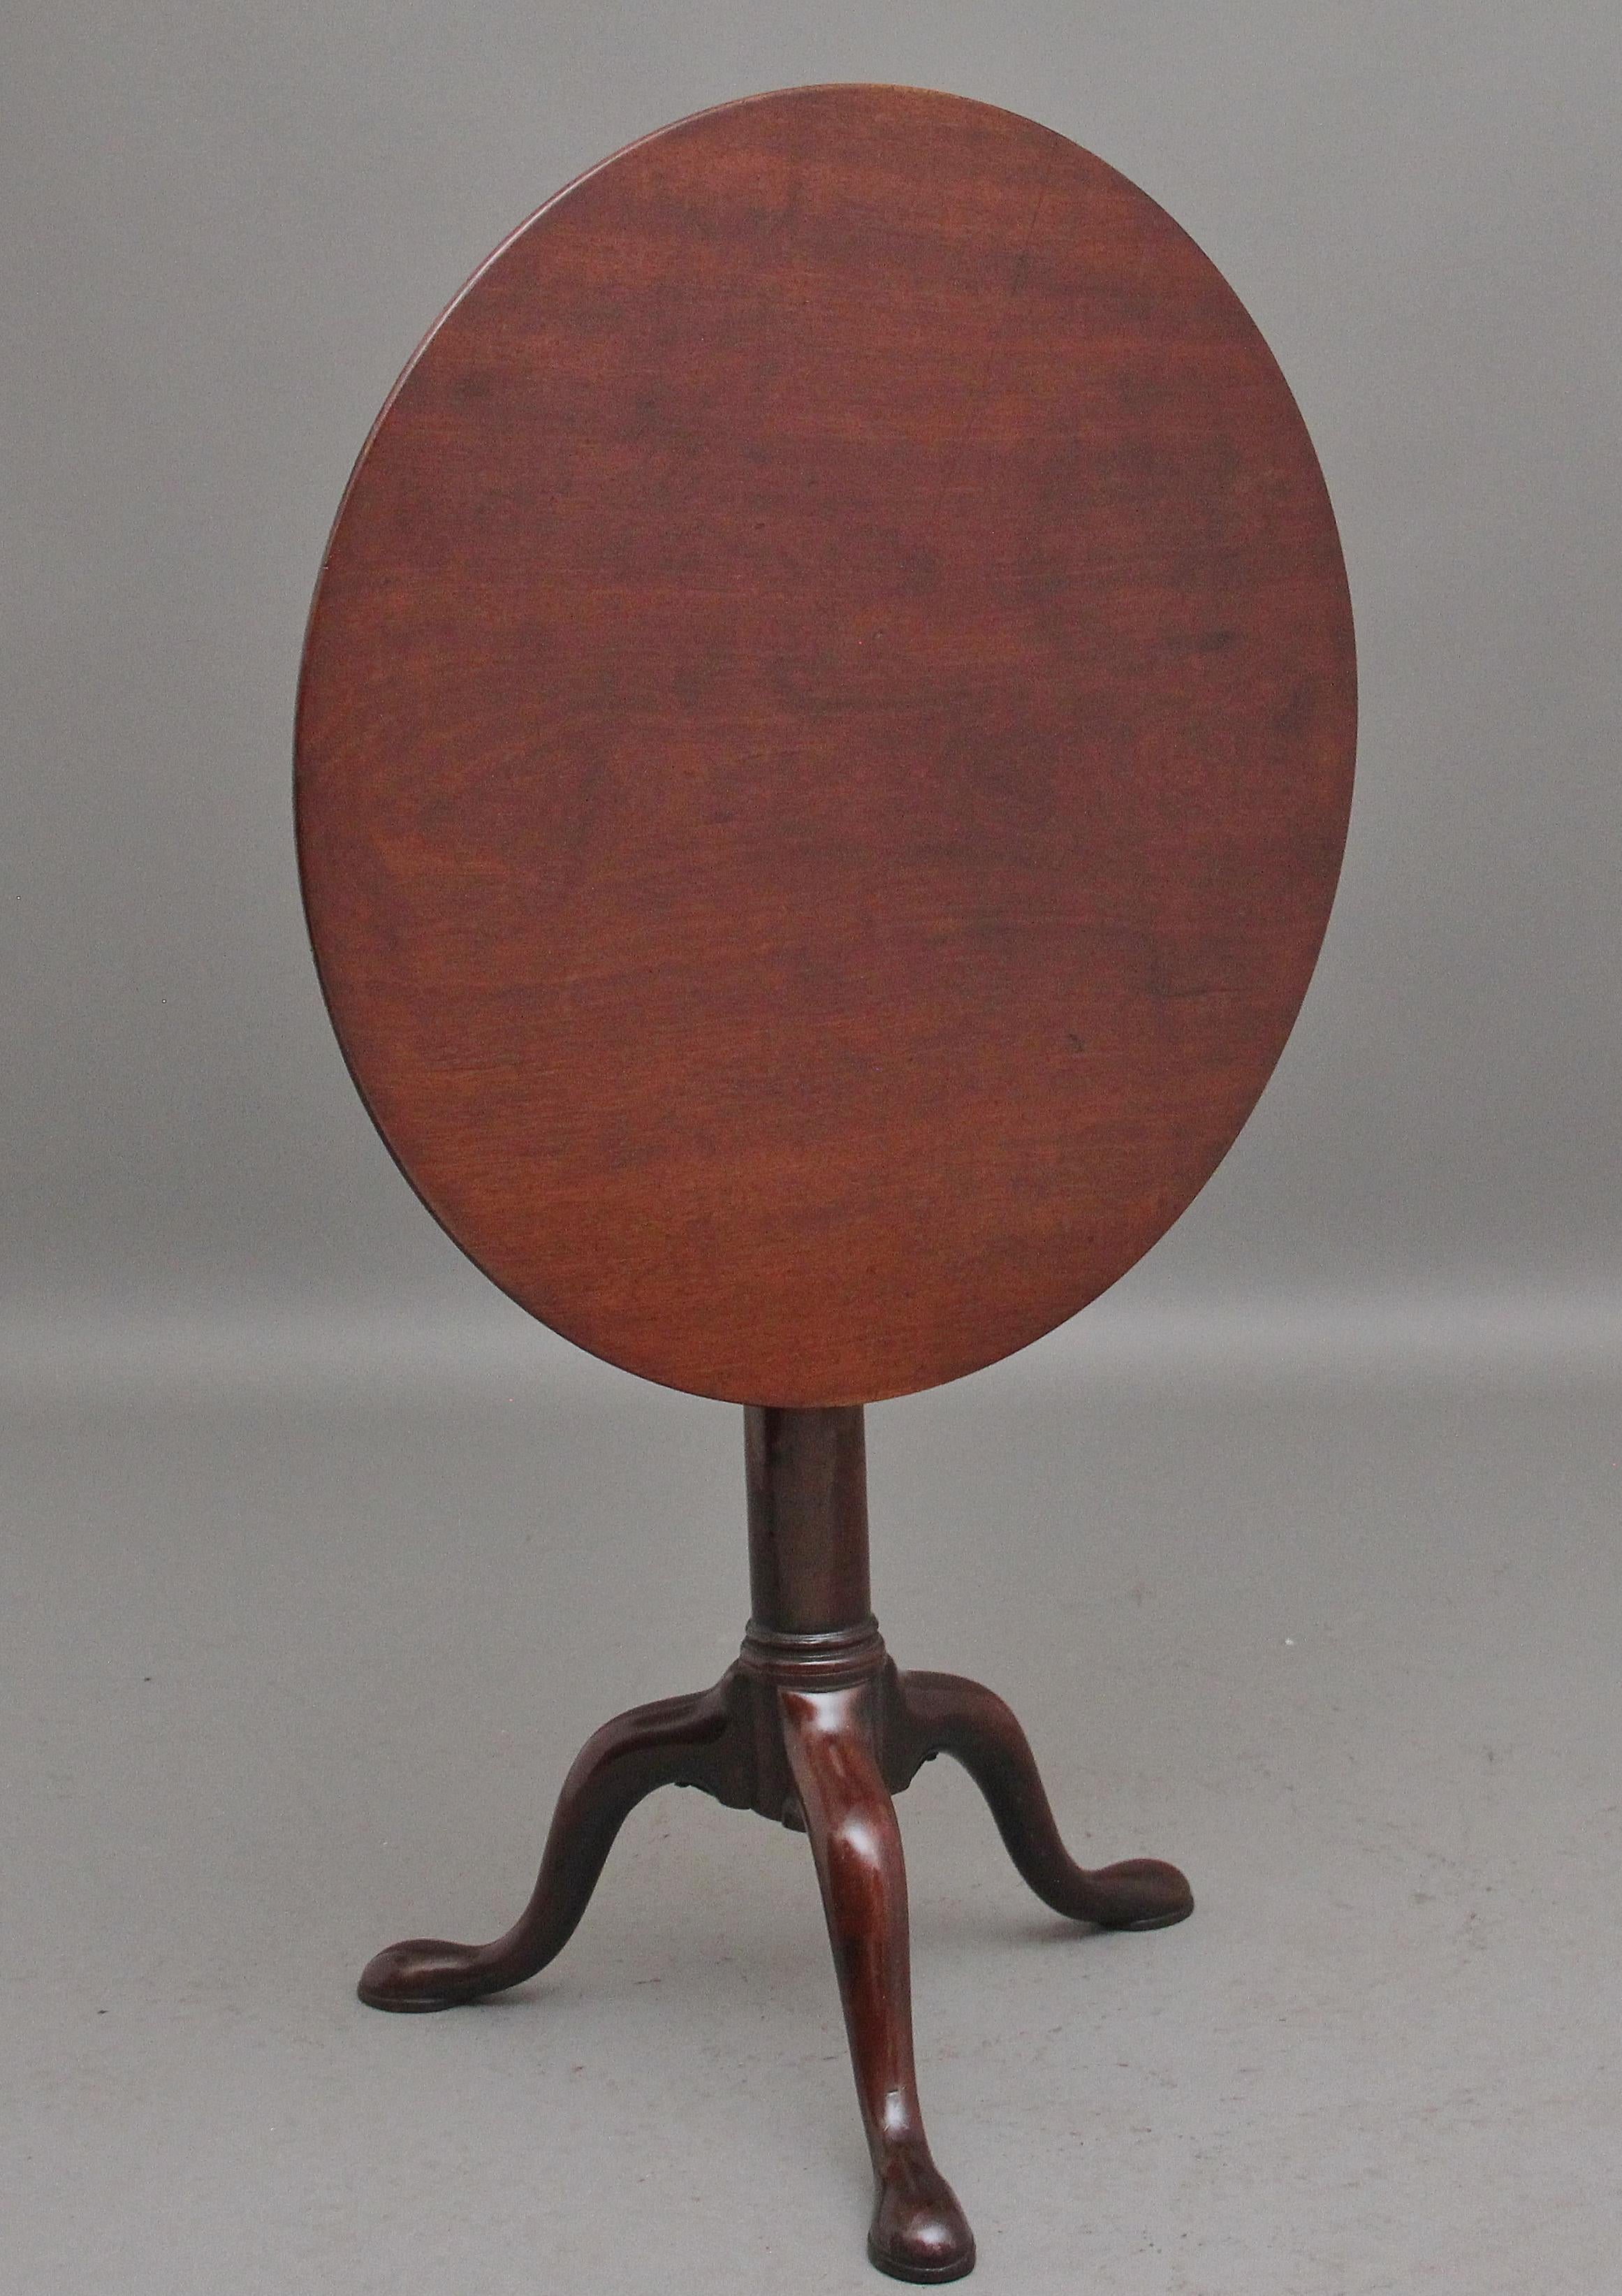 Table à vin tripode en acajou du XVIIIe siècle, le plateau circulaire en acajou reposant sur une monture en forme de cage d'oiseau permettant de tourner le plateau sans tourner la base, supporté par une colonne tournée se terminant par trois pieds